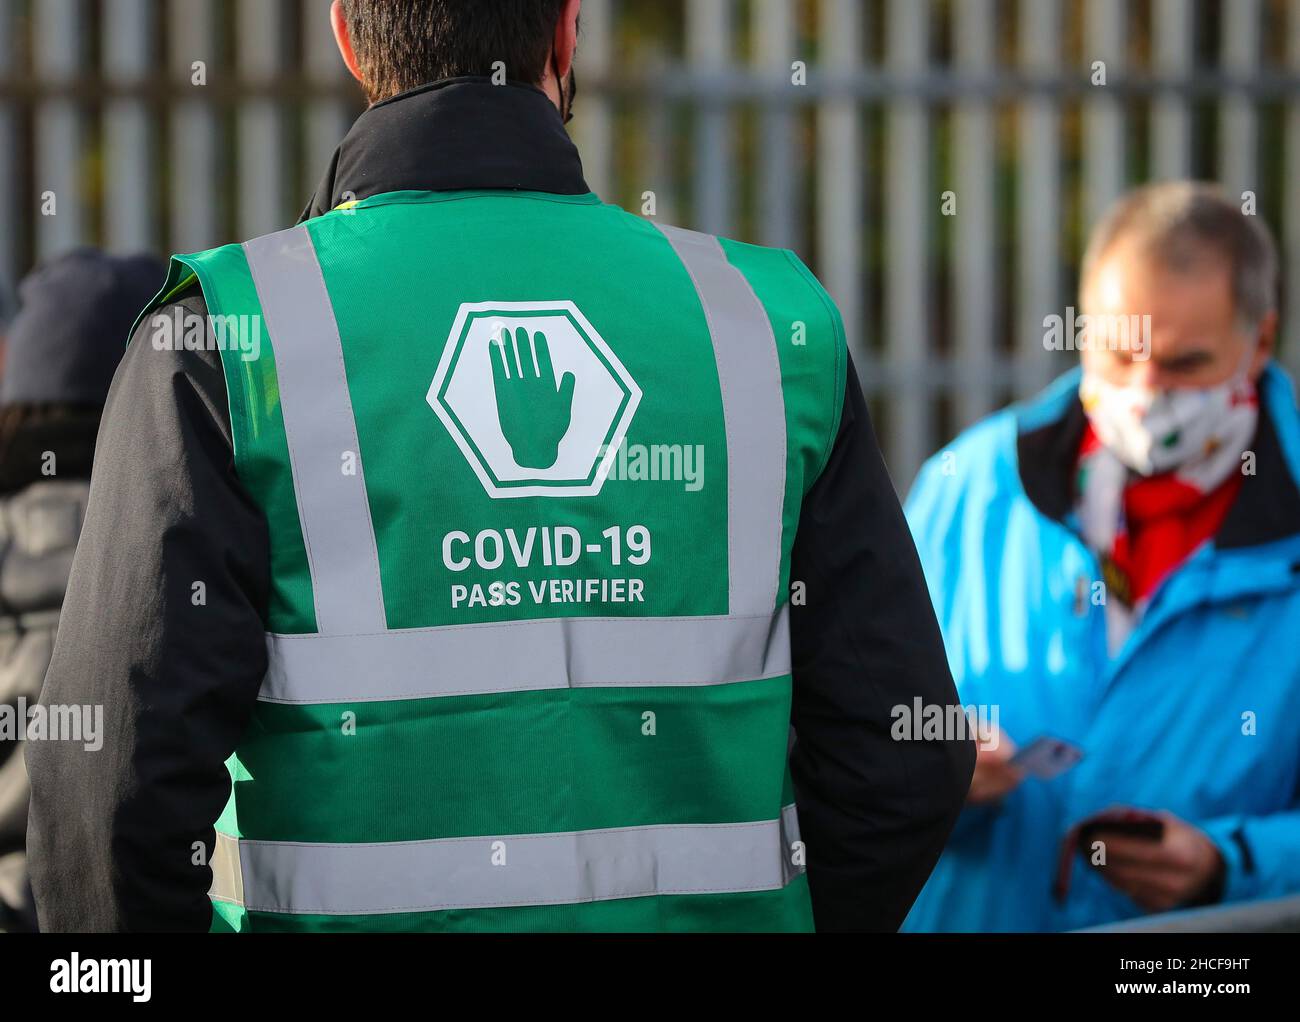 Los guardianes de Covid Pass inspeccionan los pasaportes covidos de los aficionados al fútbol mientras asisten a un partido de fútbol de la Premier League del Reino Unido en Southampton, Reino Unido. Foto de stock